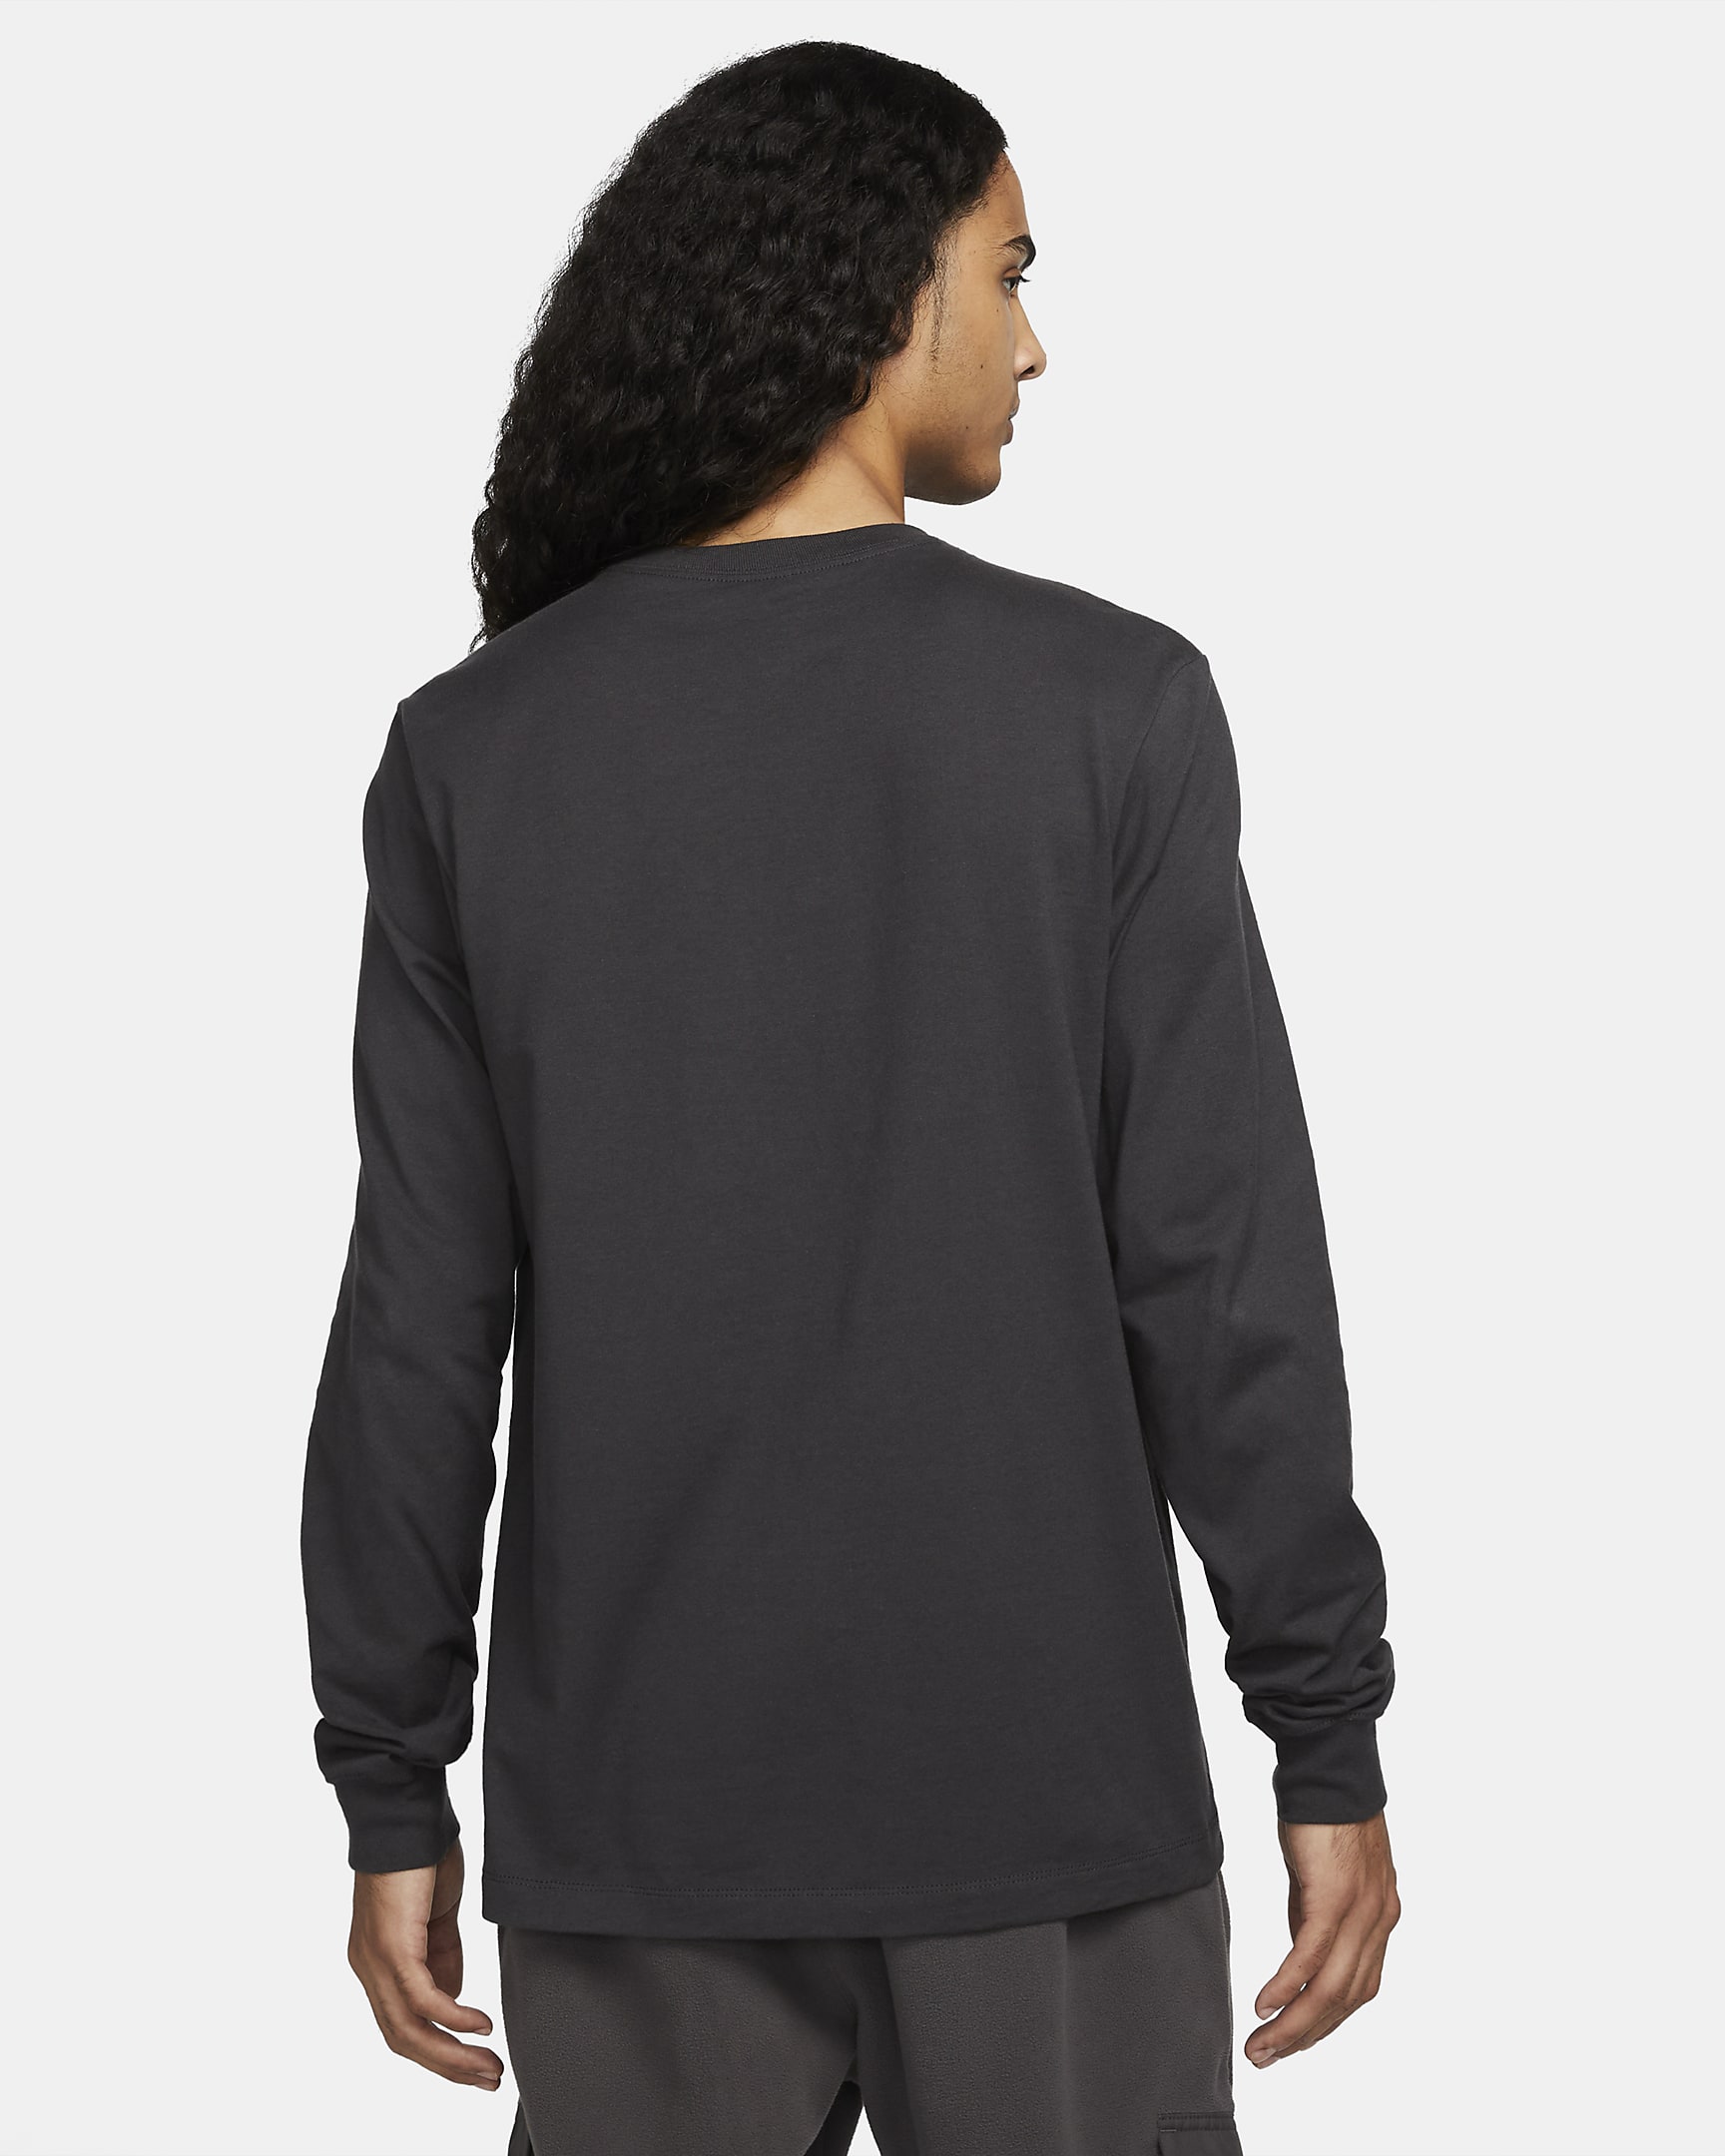 Nike Sportswear Men's Long-Sleeve Collectible T-Shirt. Nike.com